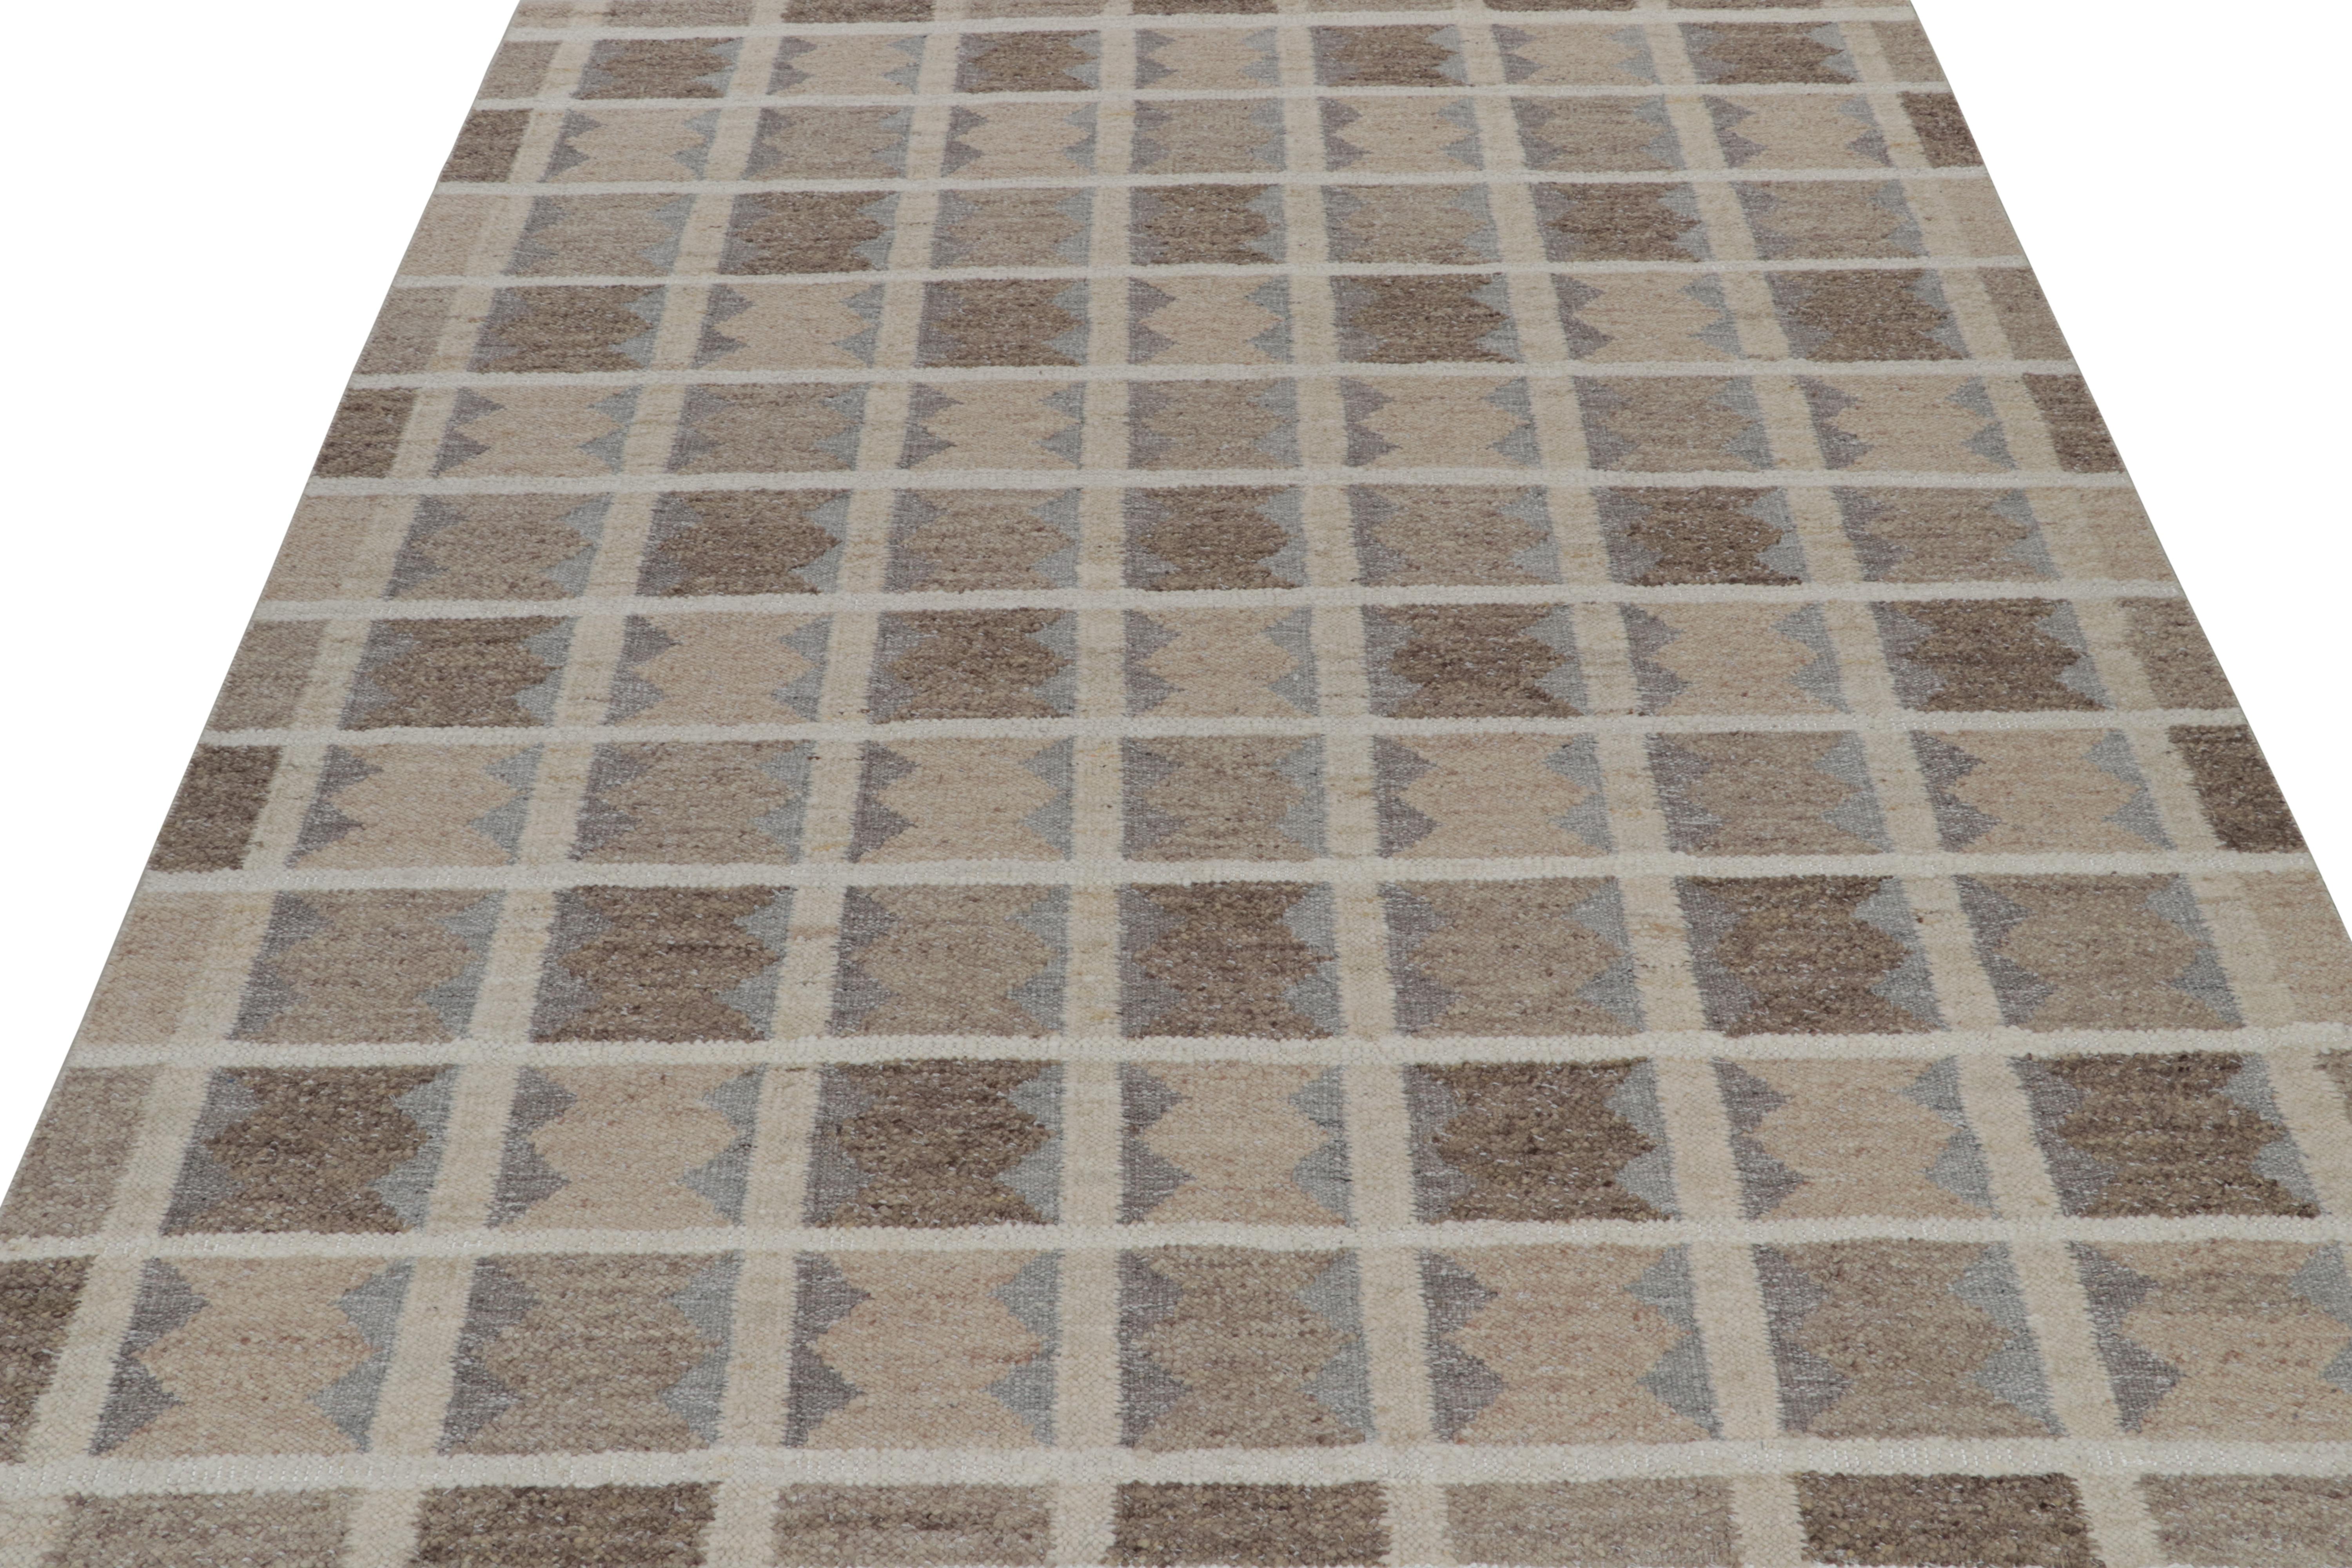 Moderne Rug & Kilim's Scandinavian Style Kilim in Beige, Brown & Gray Geometric Patterns (Kilim de style scandinave aux motifs géométriques beige, brun et gris) en vente